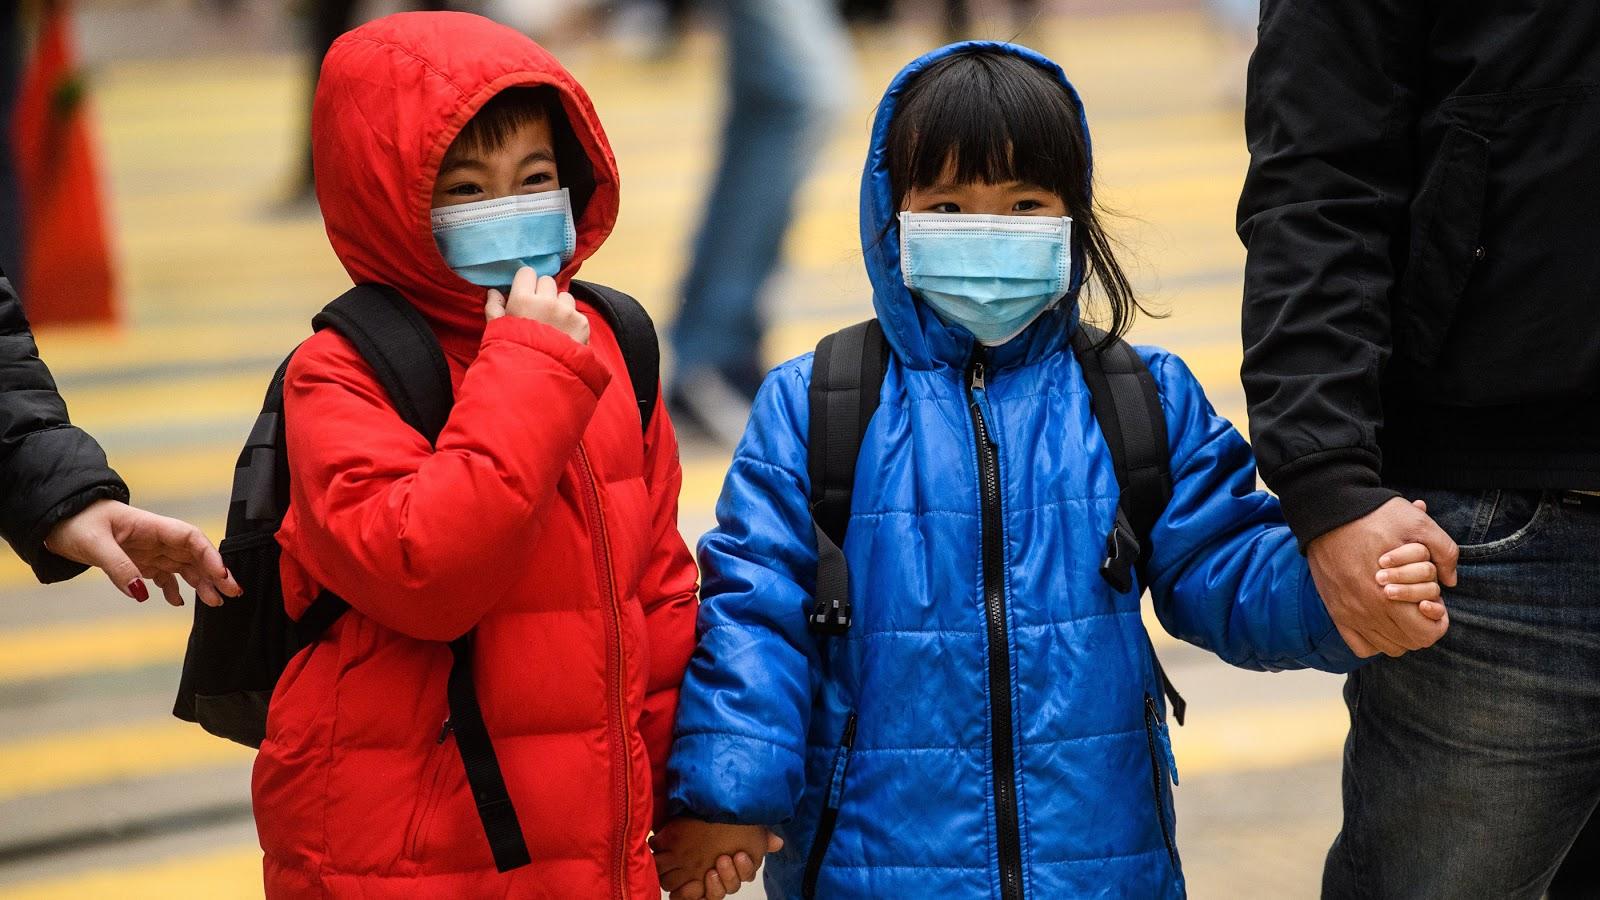 Vào mùa lạnh, cần mặc ấm và che kín tai - mũi - họng cho trẻ khi ra ngoài để tránh vi khuẩn, virus xâm nhập (ảnh minh họa)